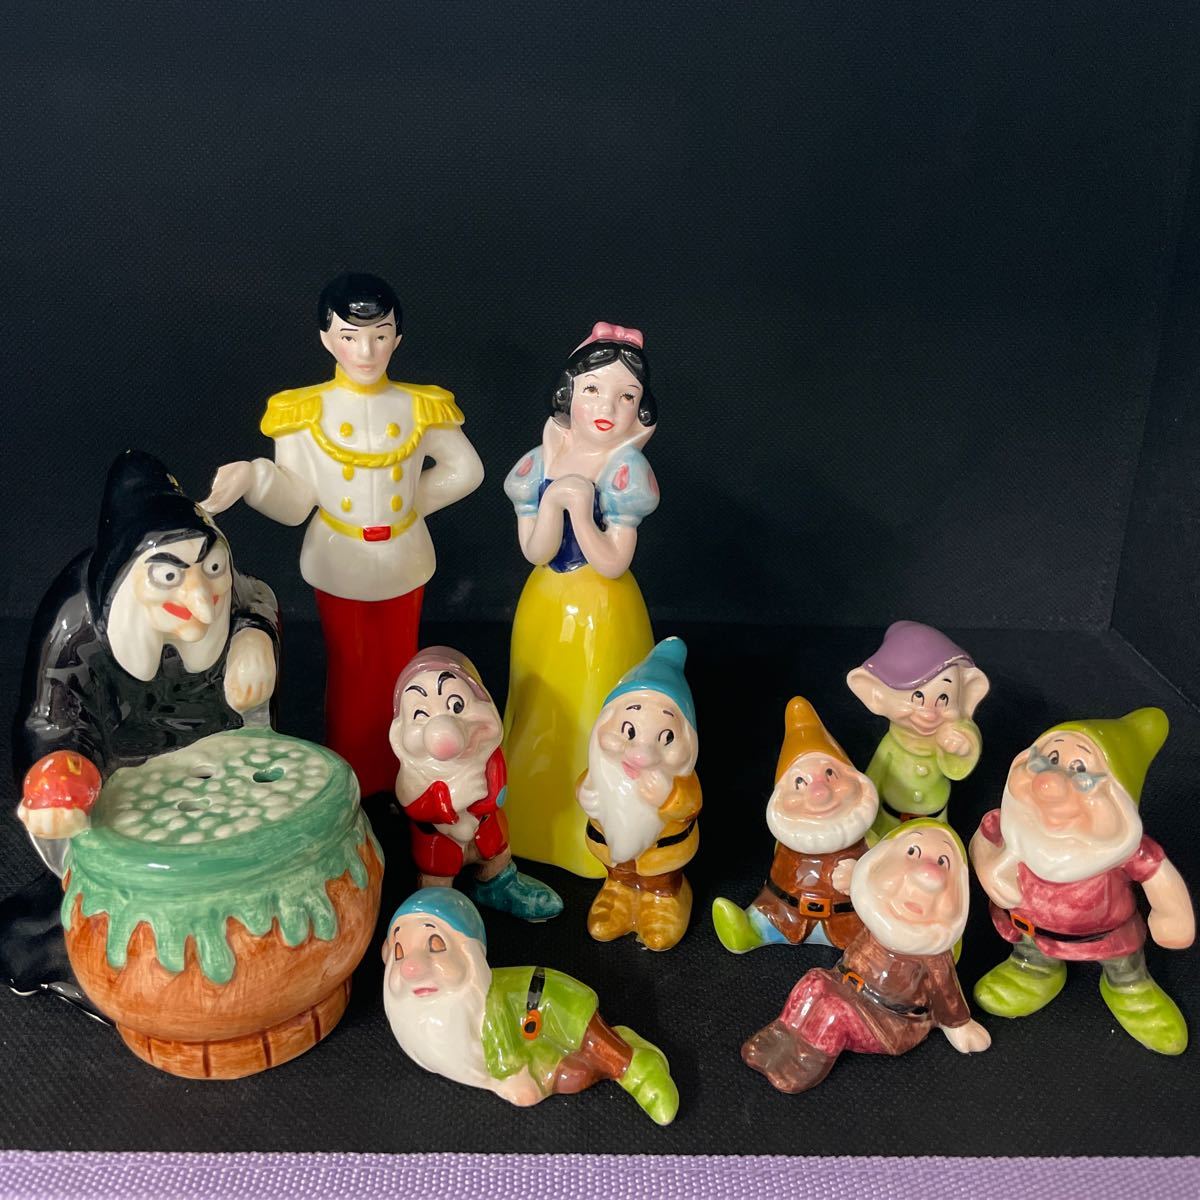 ディズニー フィギュア フィギュリン 白雪姫 王子様 魔女 7人の小人 Disney 陶器製 10体セット 240207T08_画像1